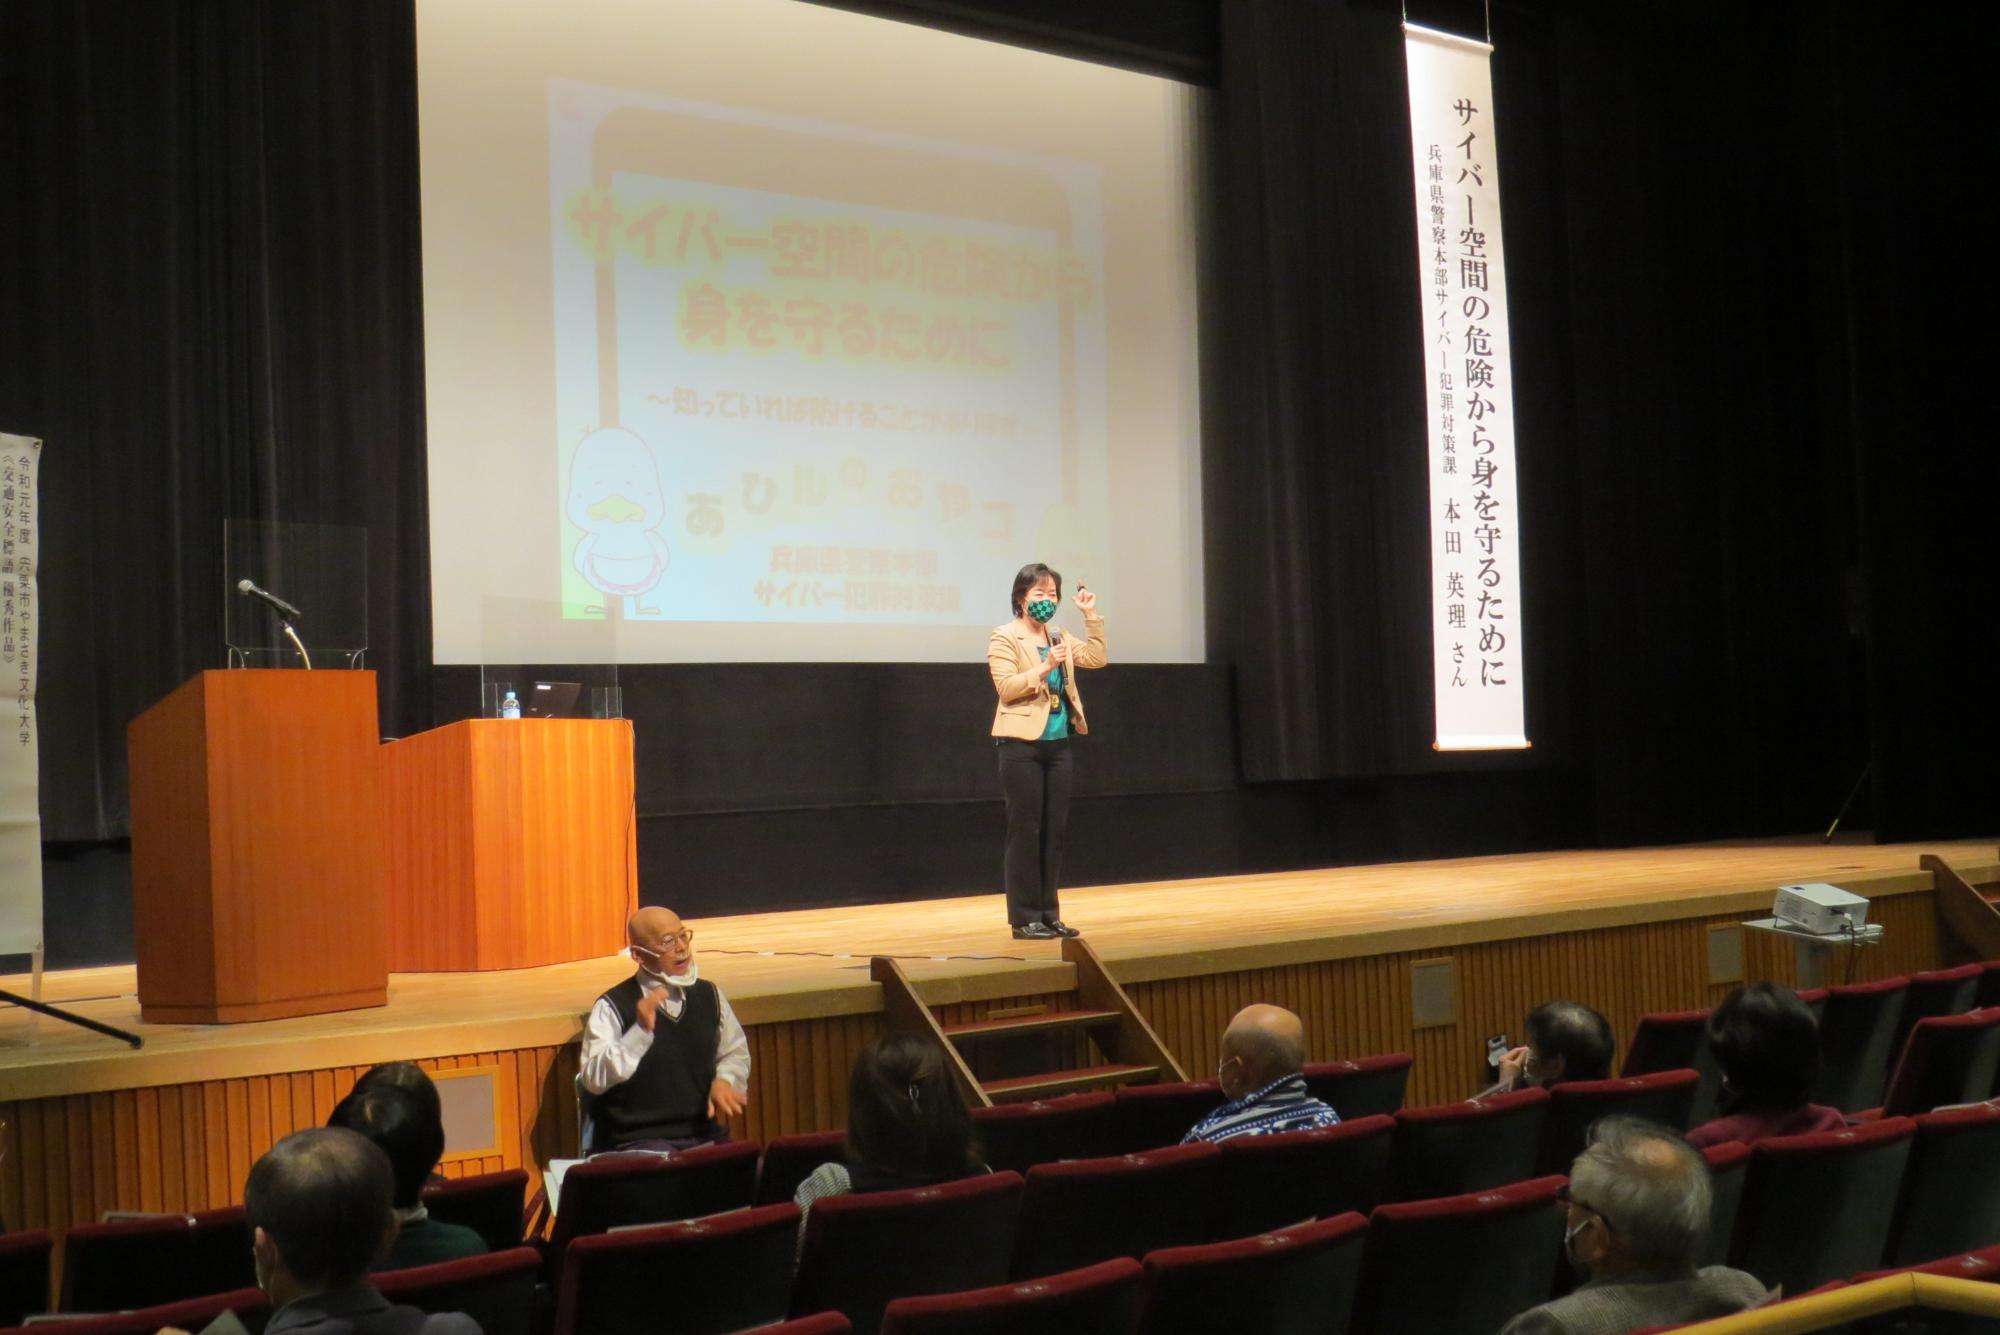 山崎文化大学一般教養講座でサイバー講習の講演をしている講師の先生の写真